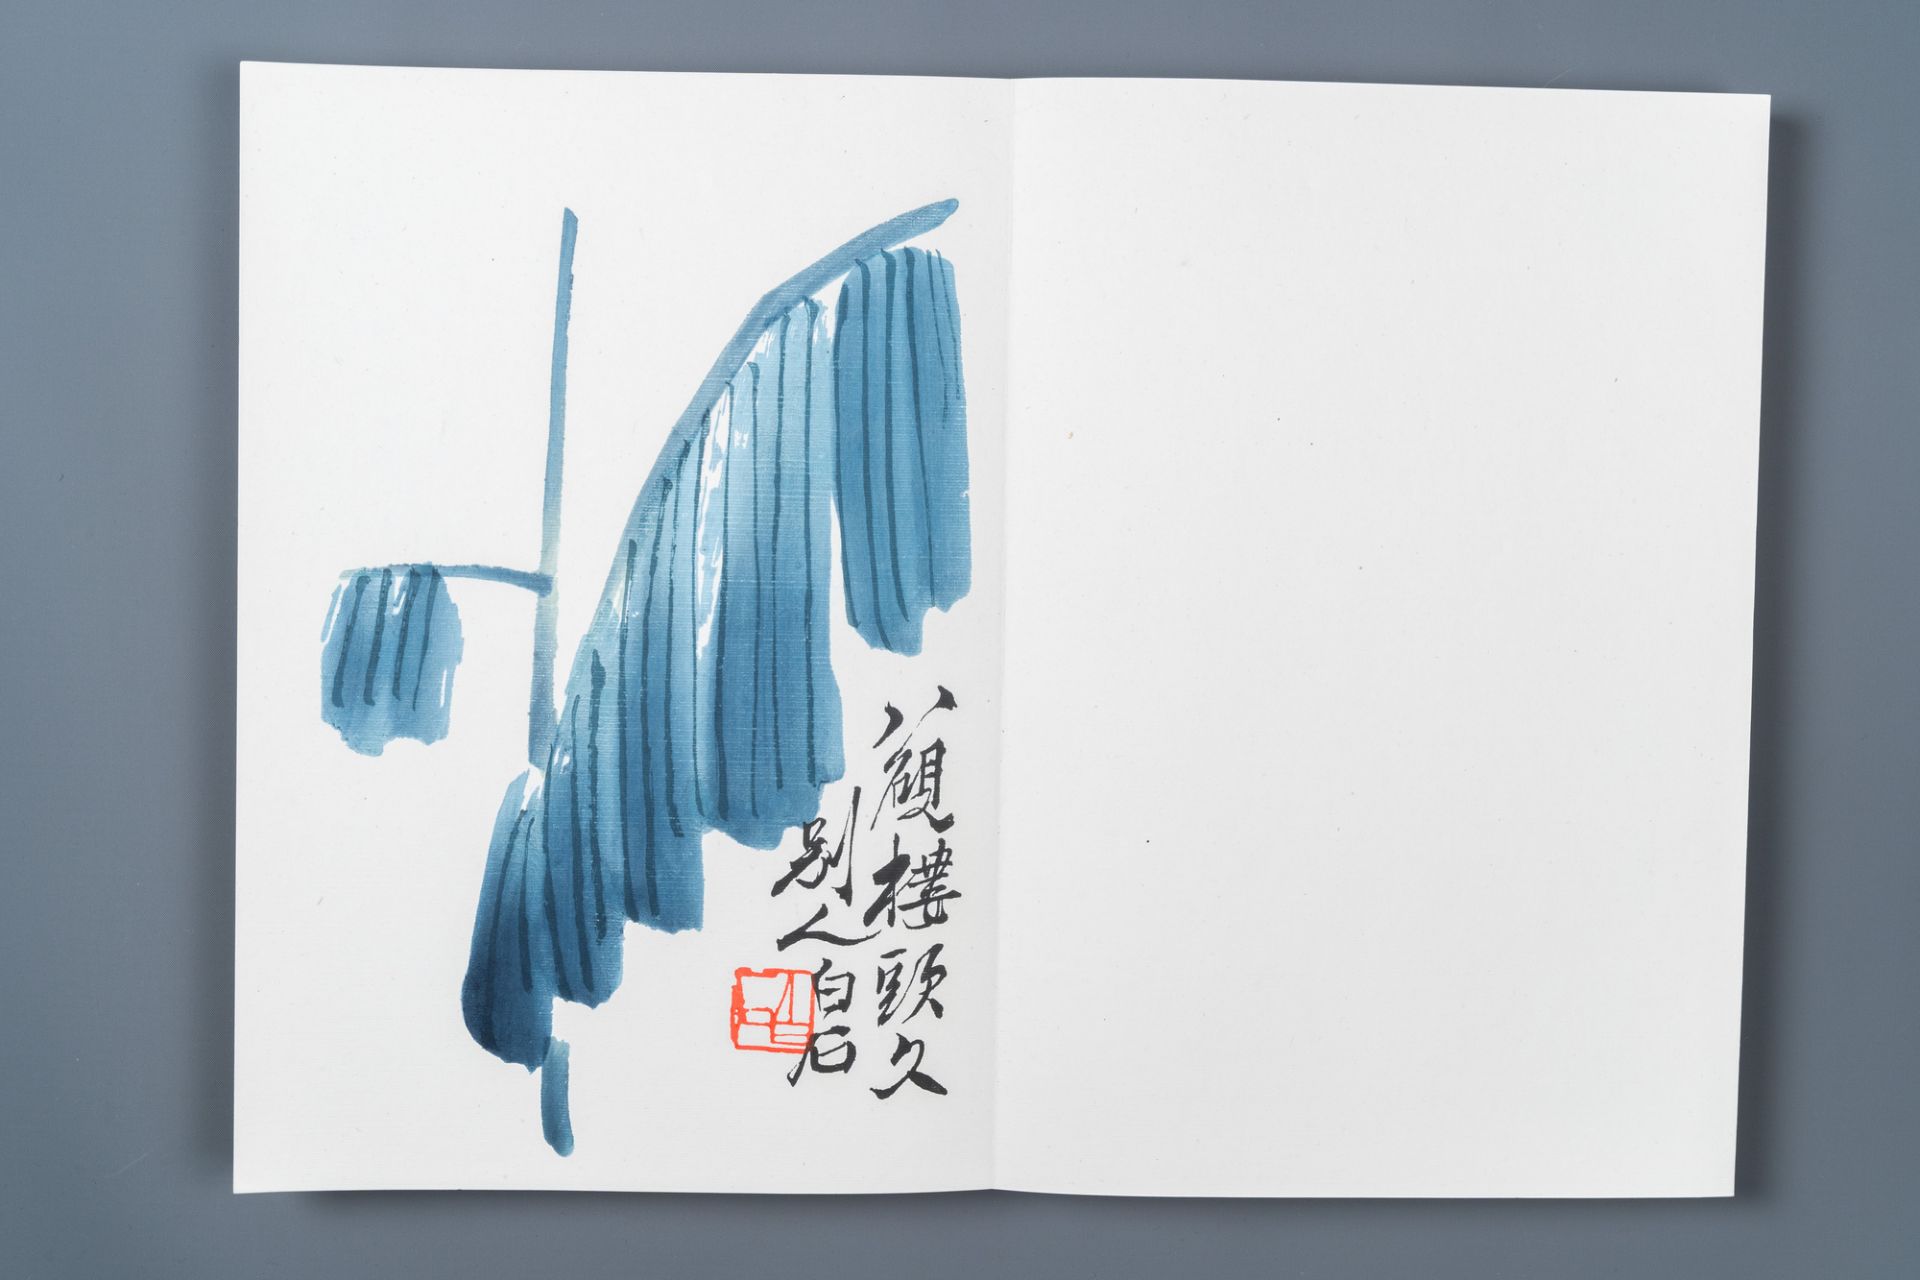 An album of 22 woodblocks after Qi Baishi, Rong Bao Zhai studio, Beijing, 1952 - Image 22 of 26